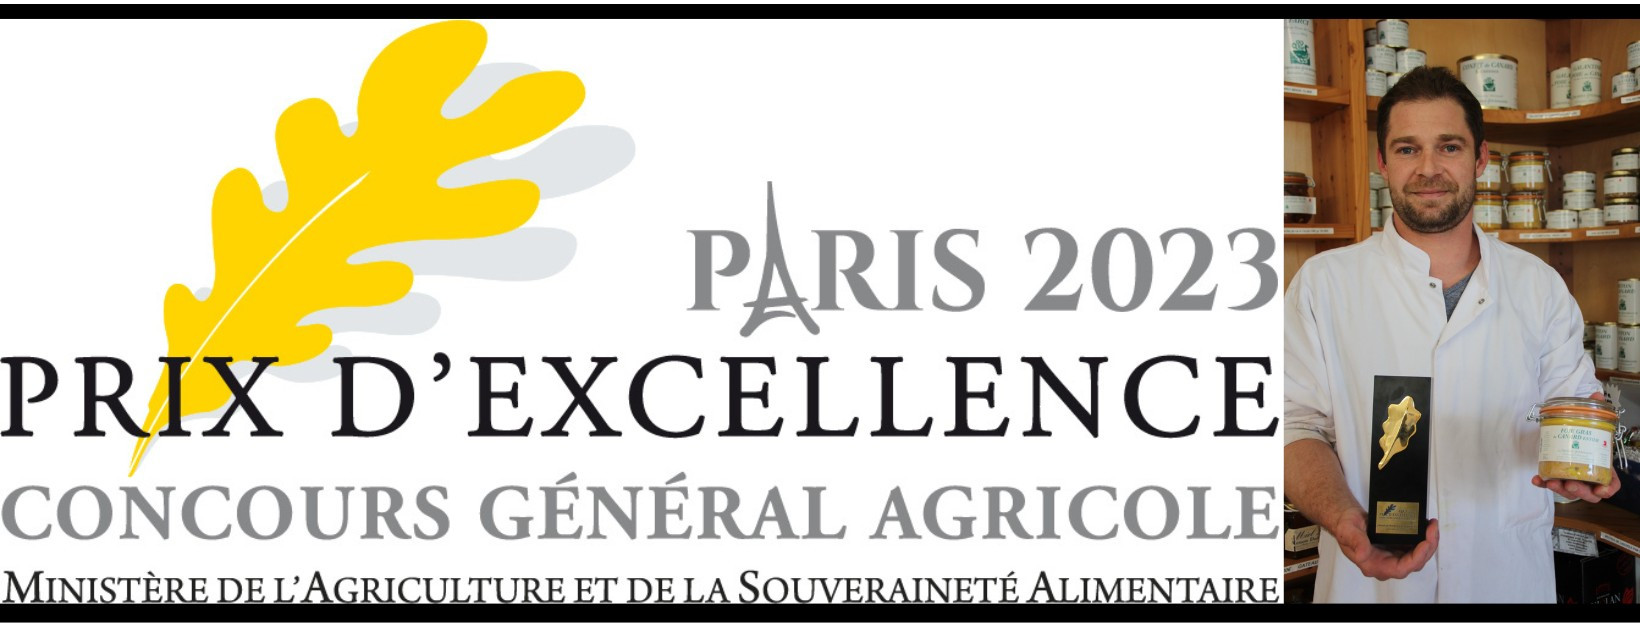 La Drosera Gourmande reçoit le Prix d'excellence en 2023 pour la qualité de ses produits